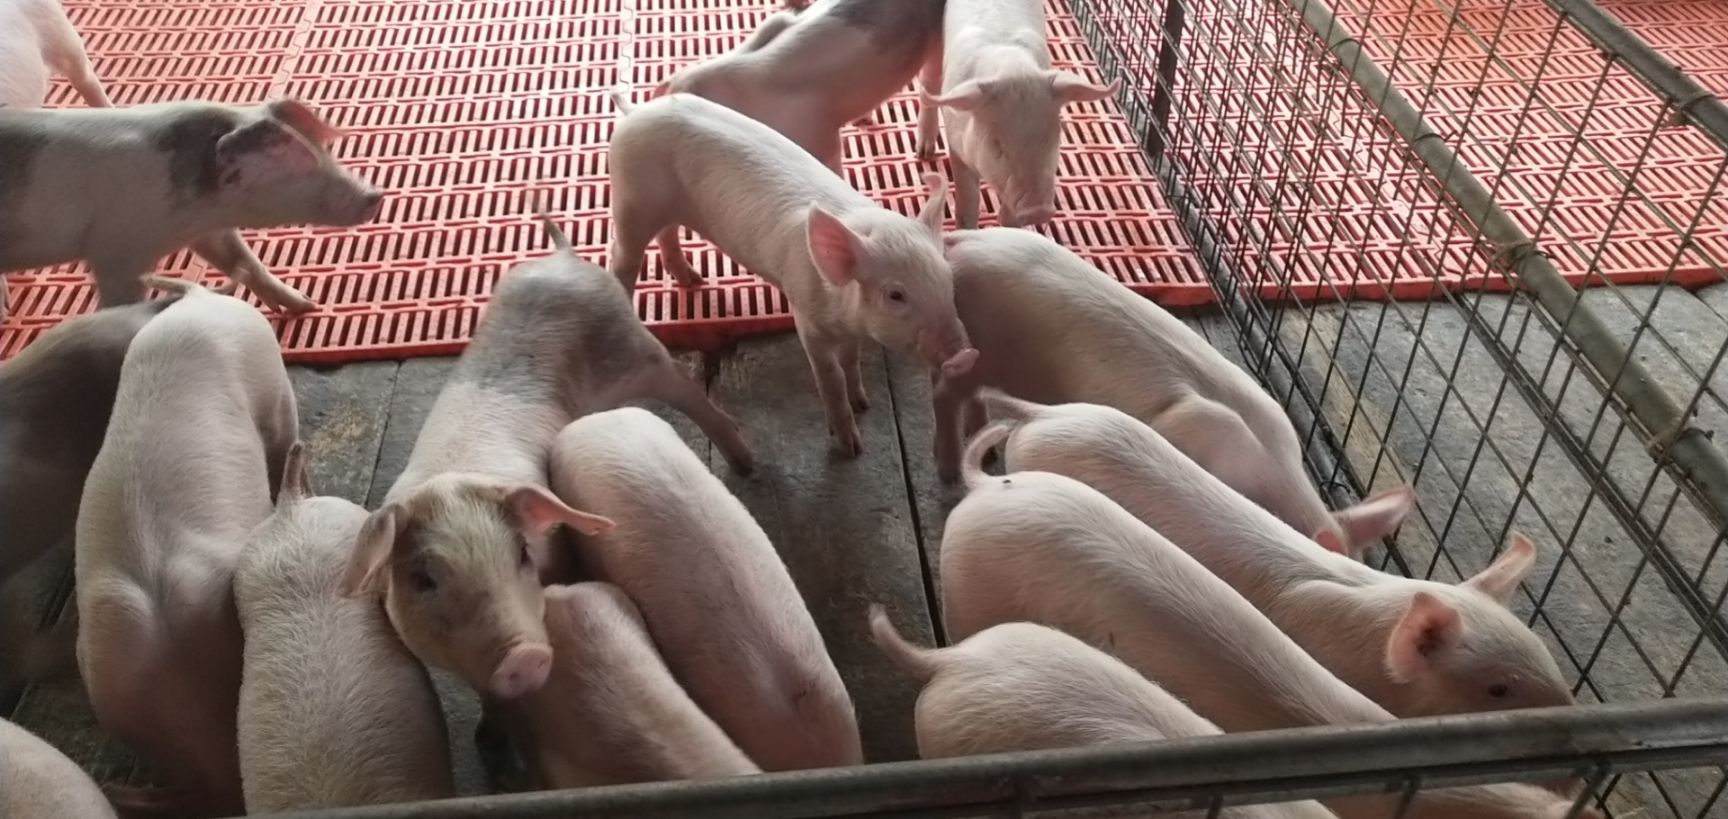 沂南县杂交猪苗  猪场批发二元猪苗。一条龙试服务。放心养猪。